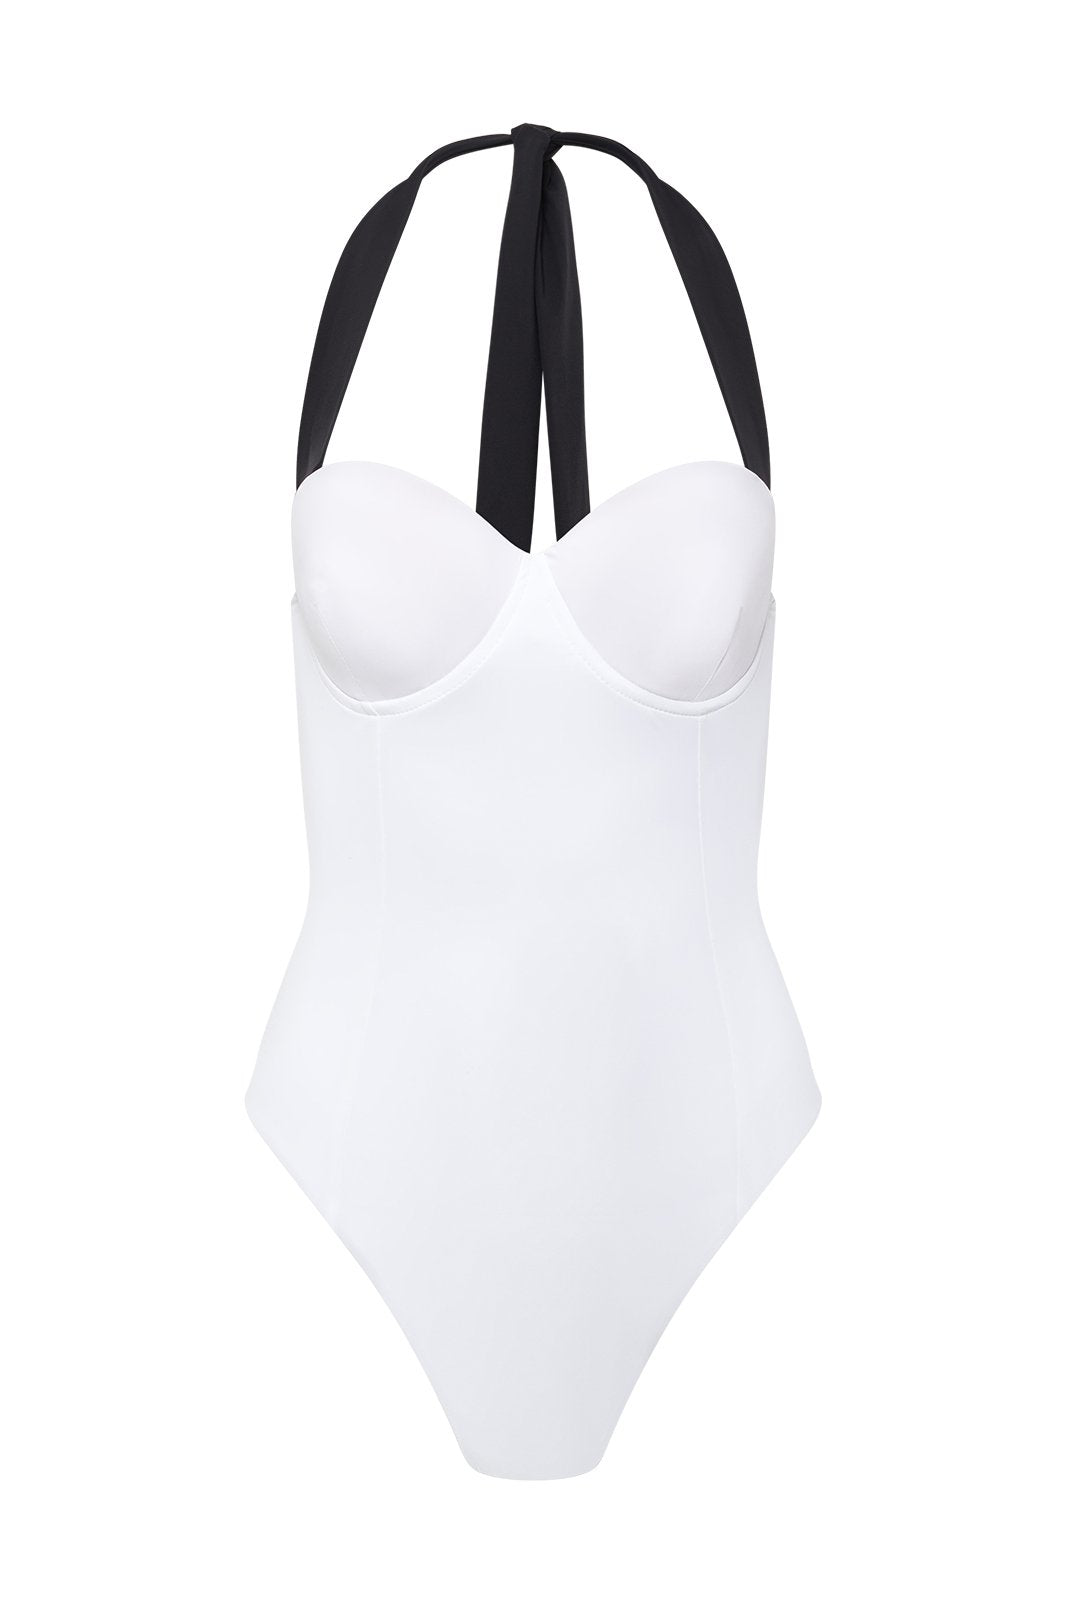 Annette Swimsuit in White by Maison De Mode - Cassea Swim